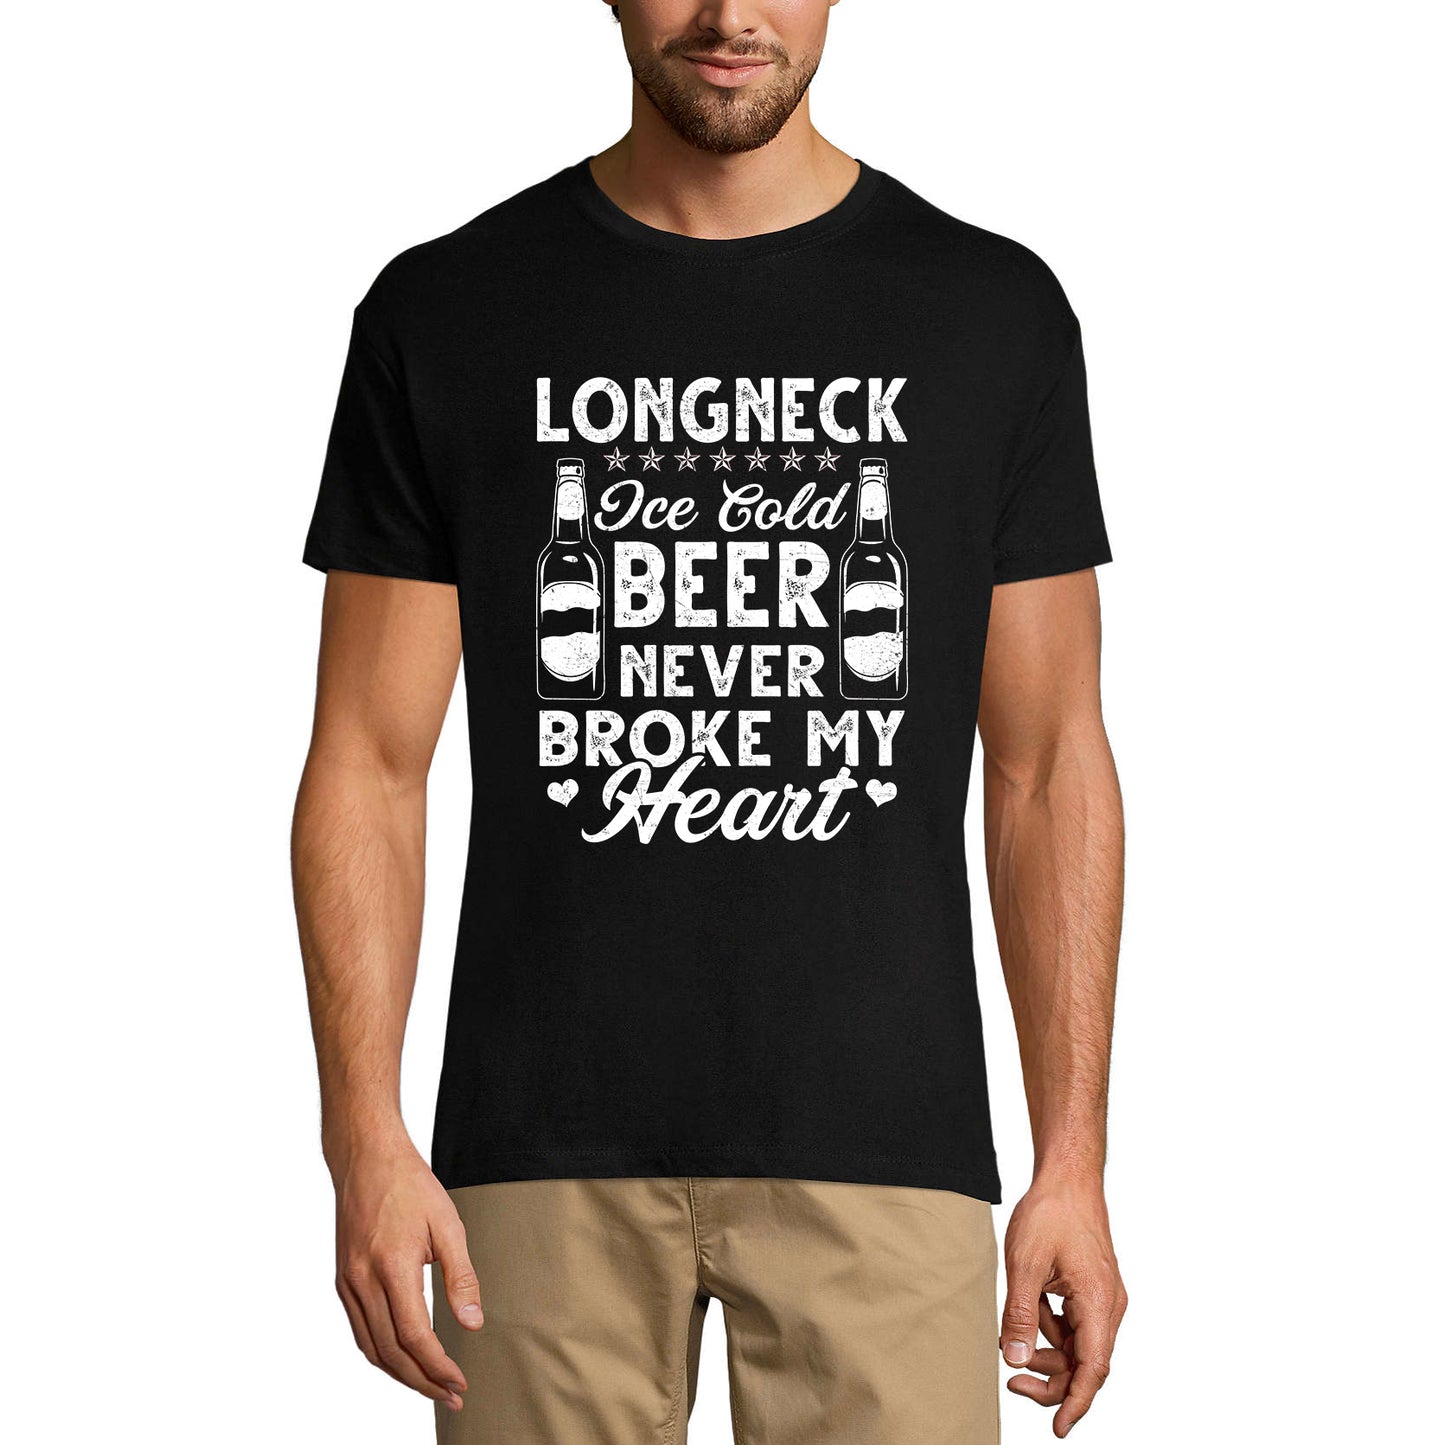 ULTRABASIC Men's T-Shirt Longneck Ice Cold Beer Never Broke My Heart - Beer Lover Tee Shirt